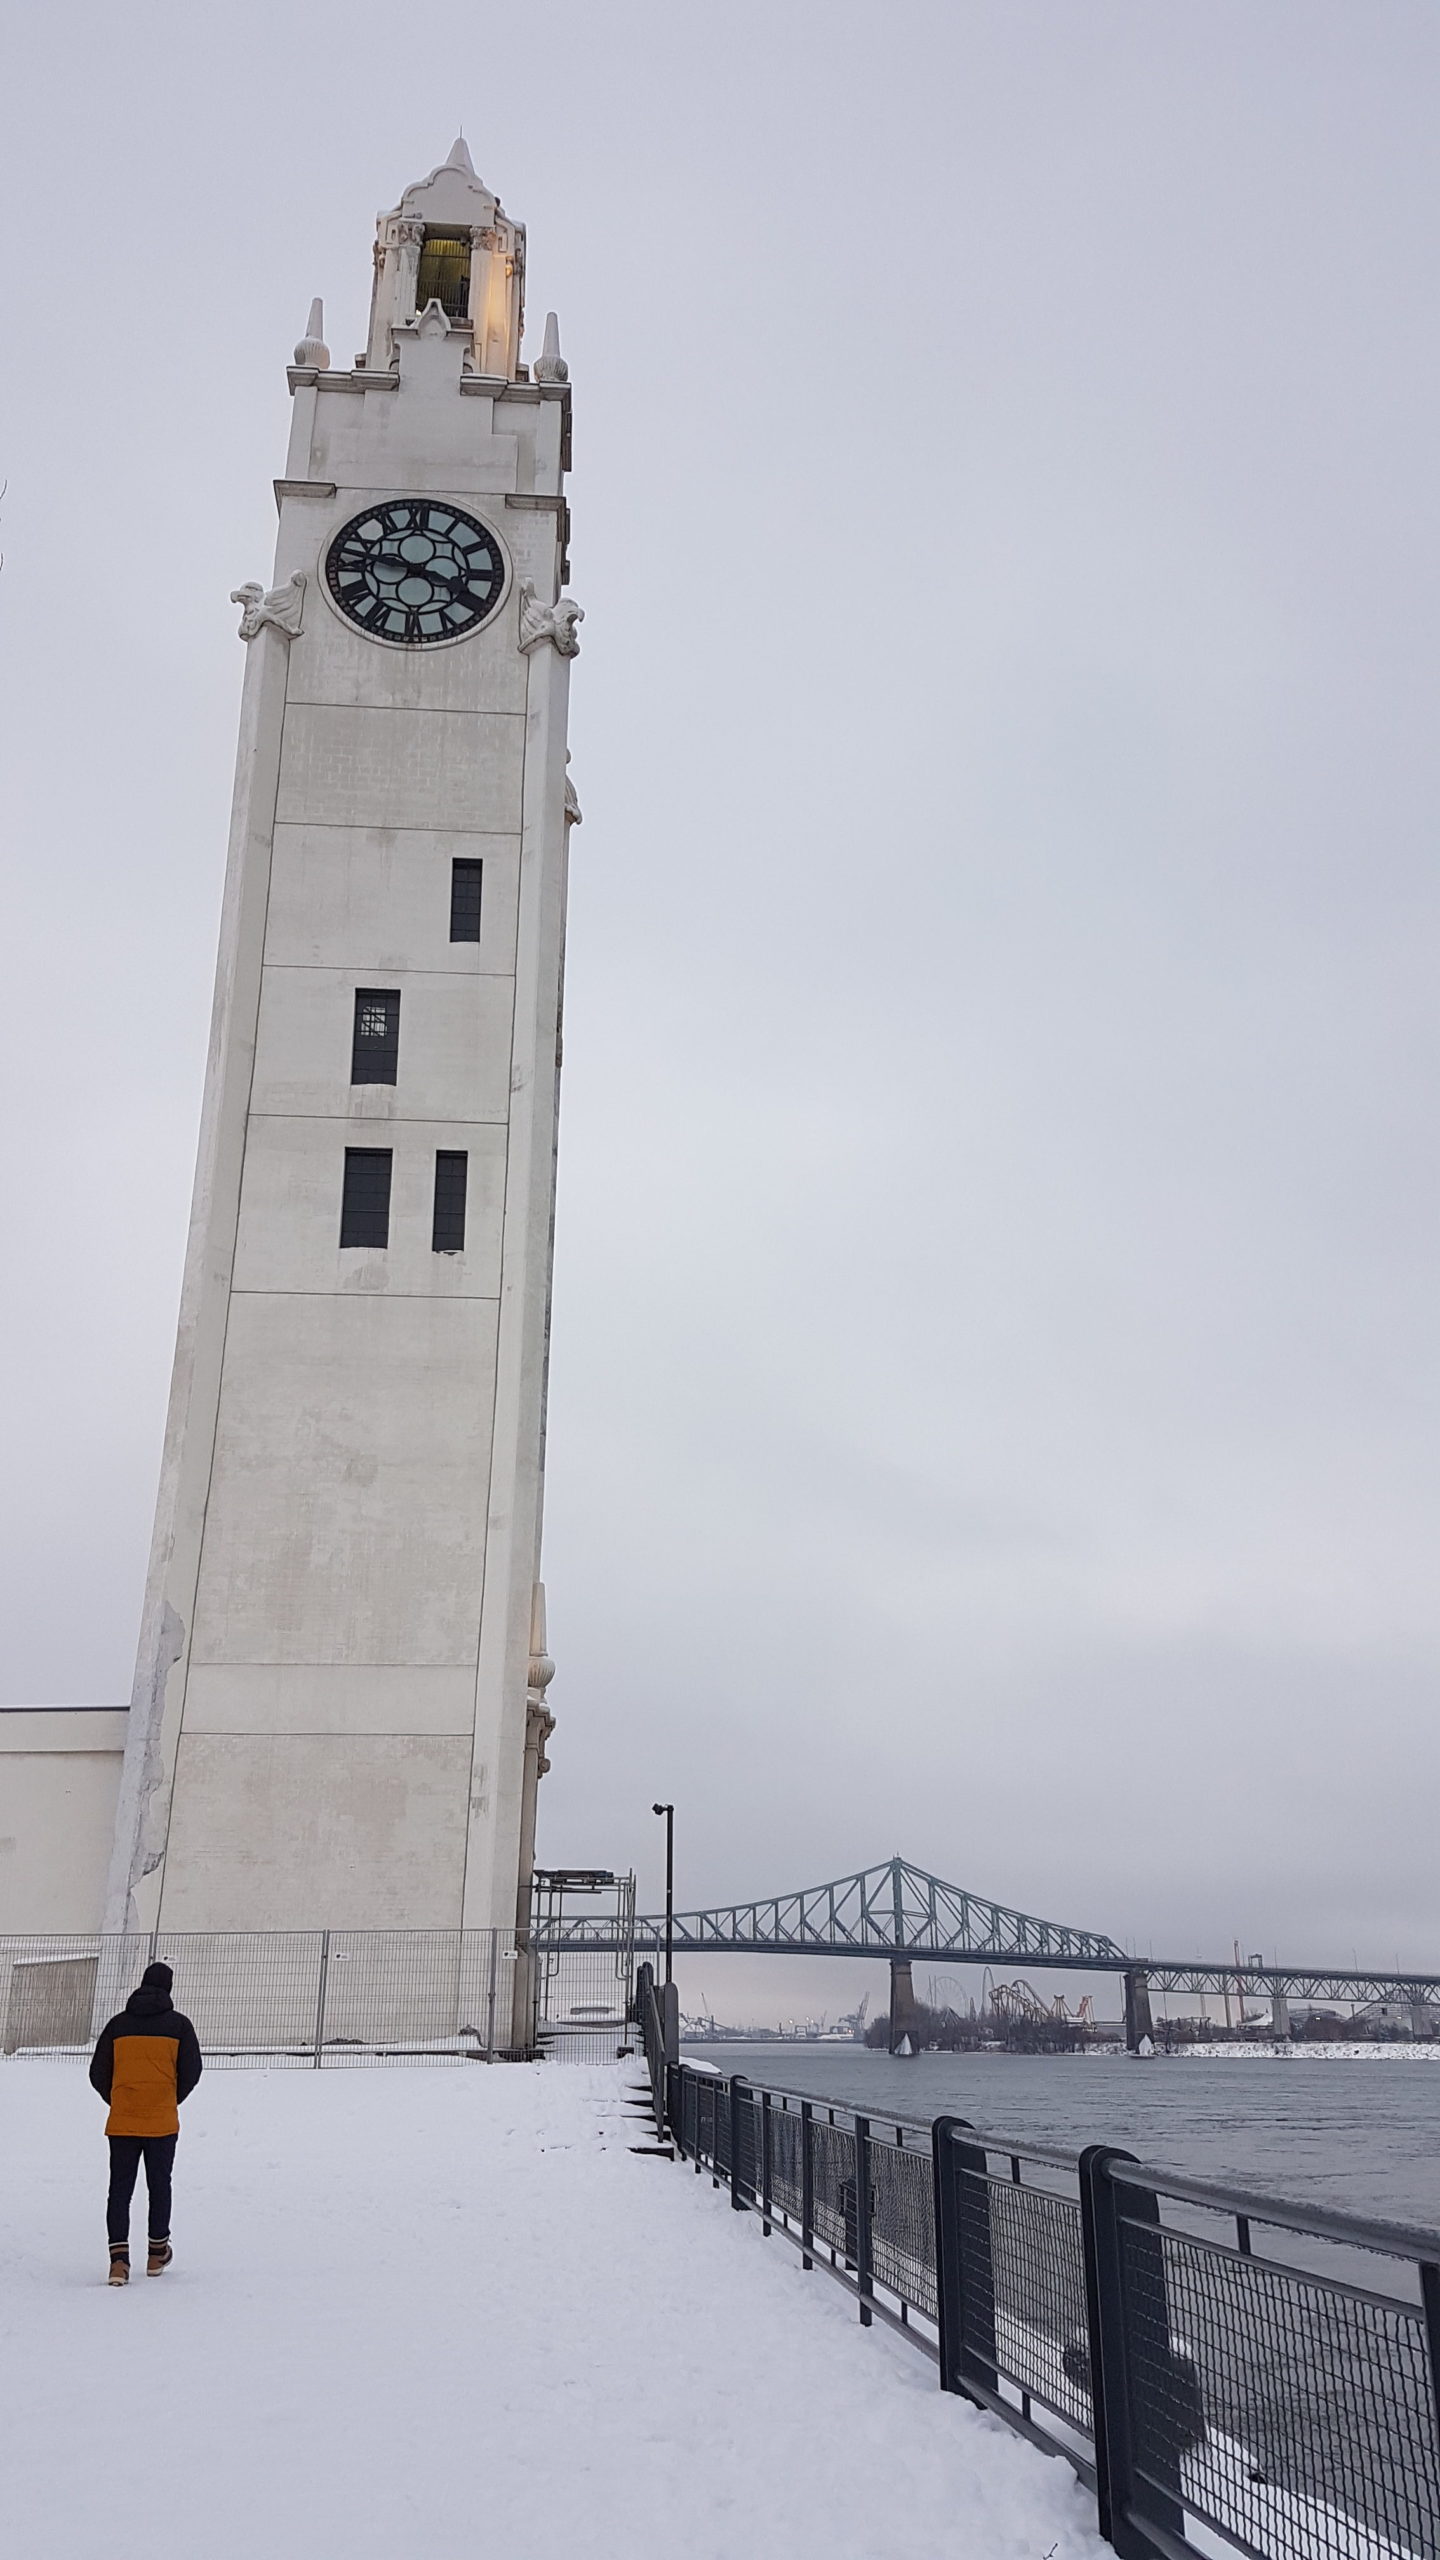 L'horloge du vieux port de Montréal